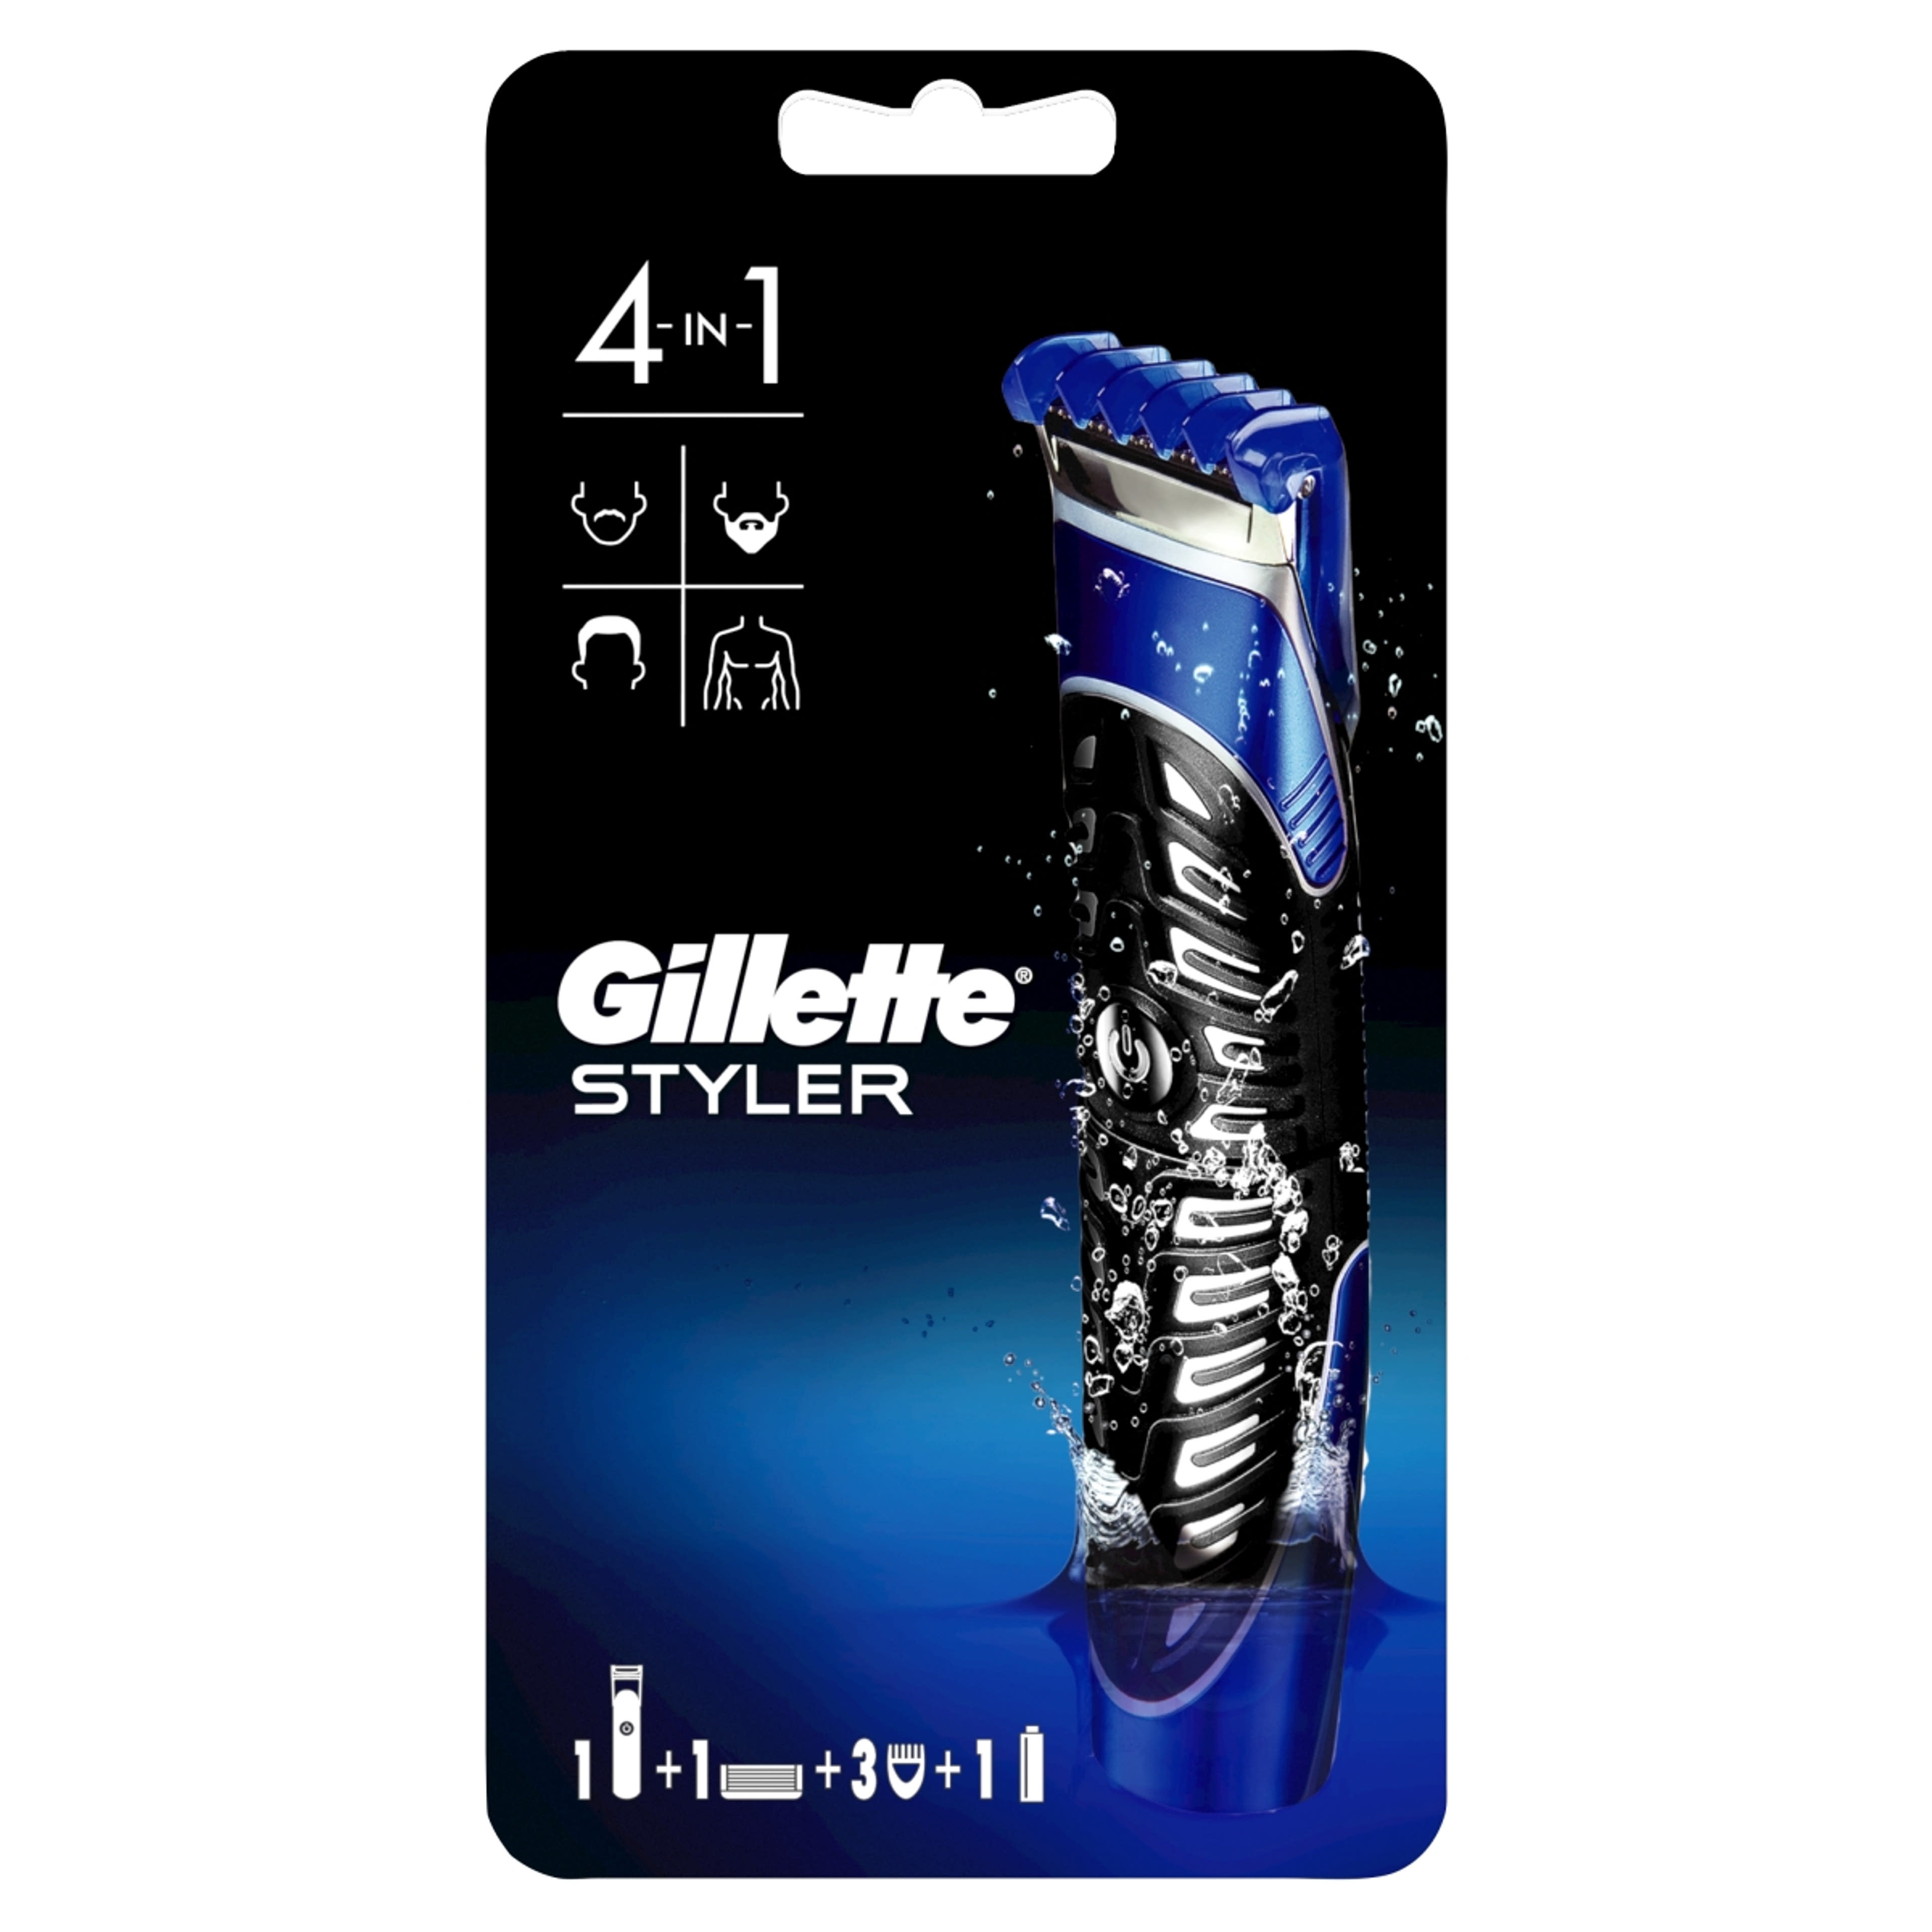 Gillette 4az1-ben borotvkészülék + 1 borotvafej - 1 db